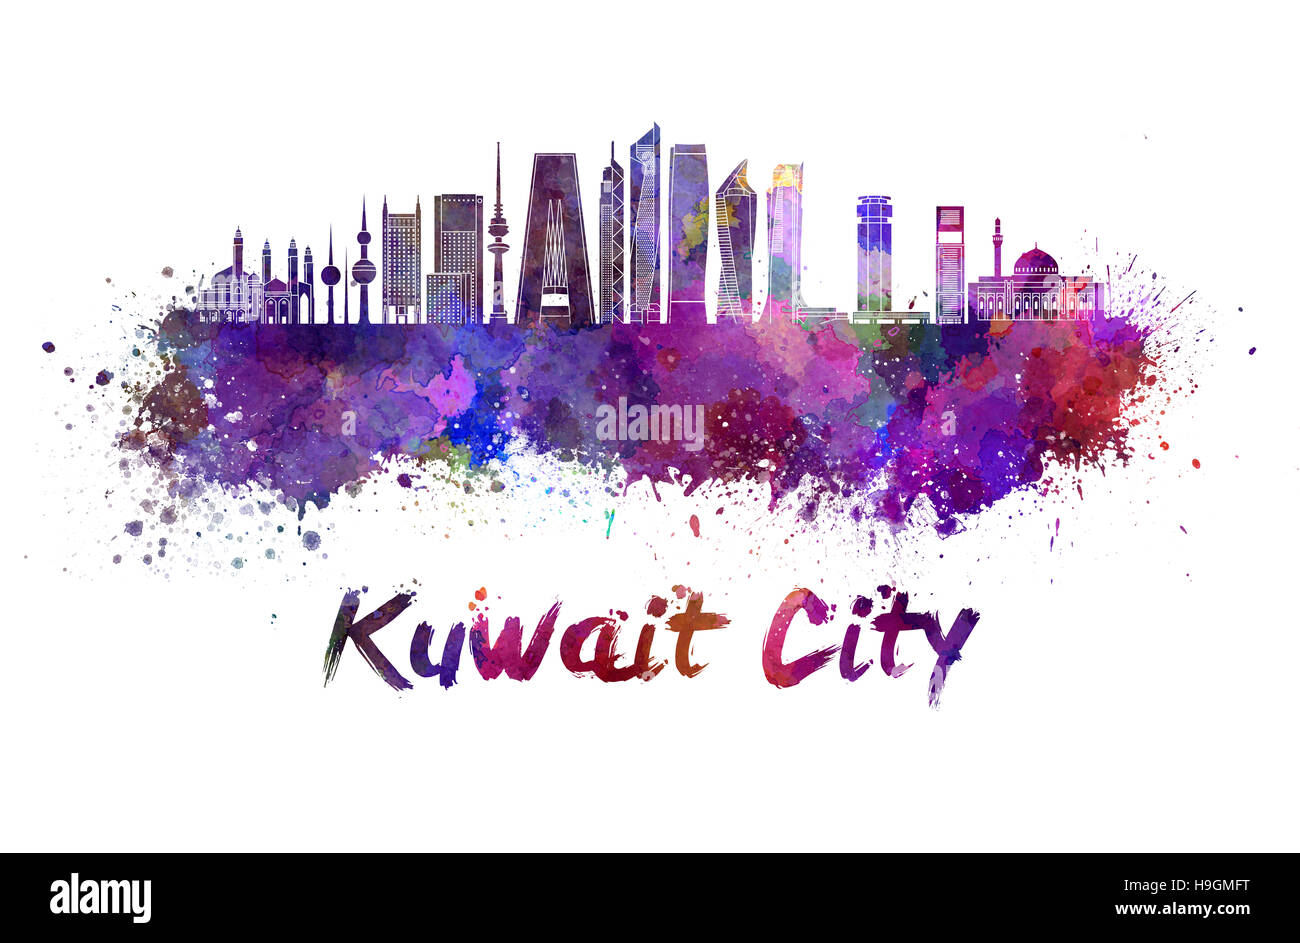 Koweït City skyline V2 à l'aquarelle des éclaboussures avec clipping path Banque D'Images